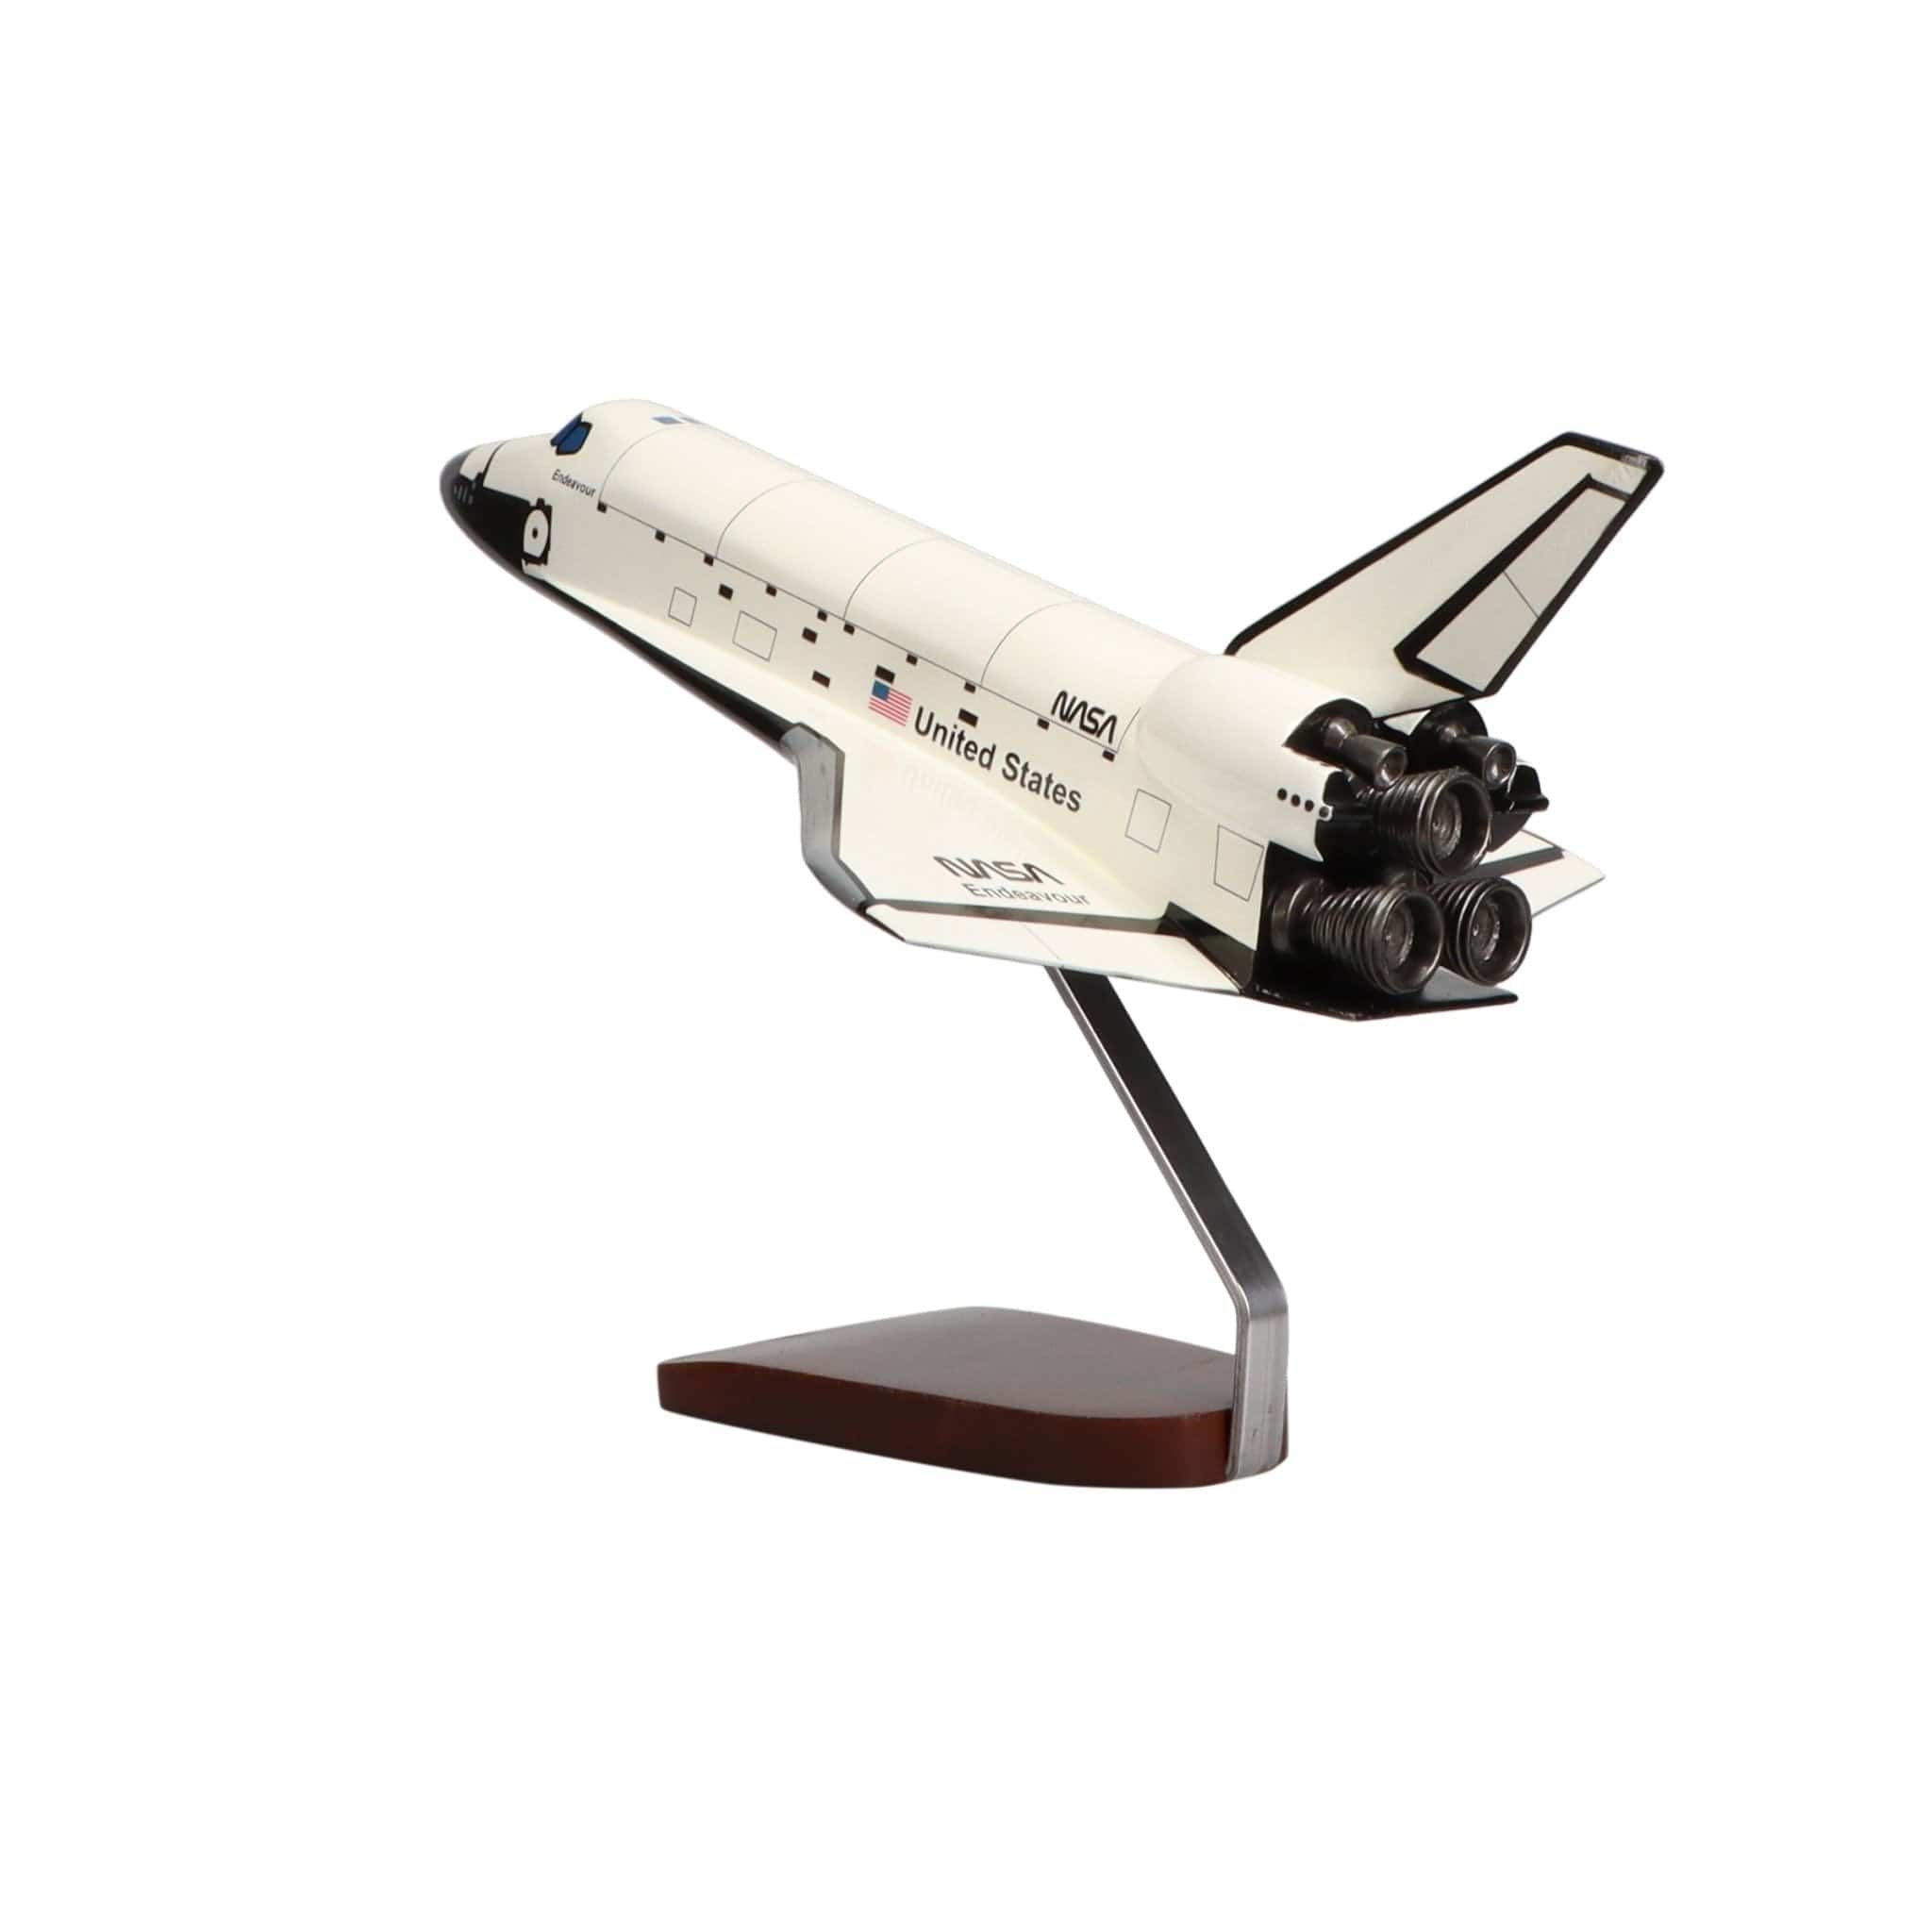 Space Shuttle Endeavour Orbiter OV-105 Large Mahogany Model